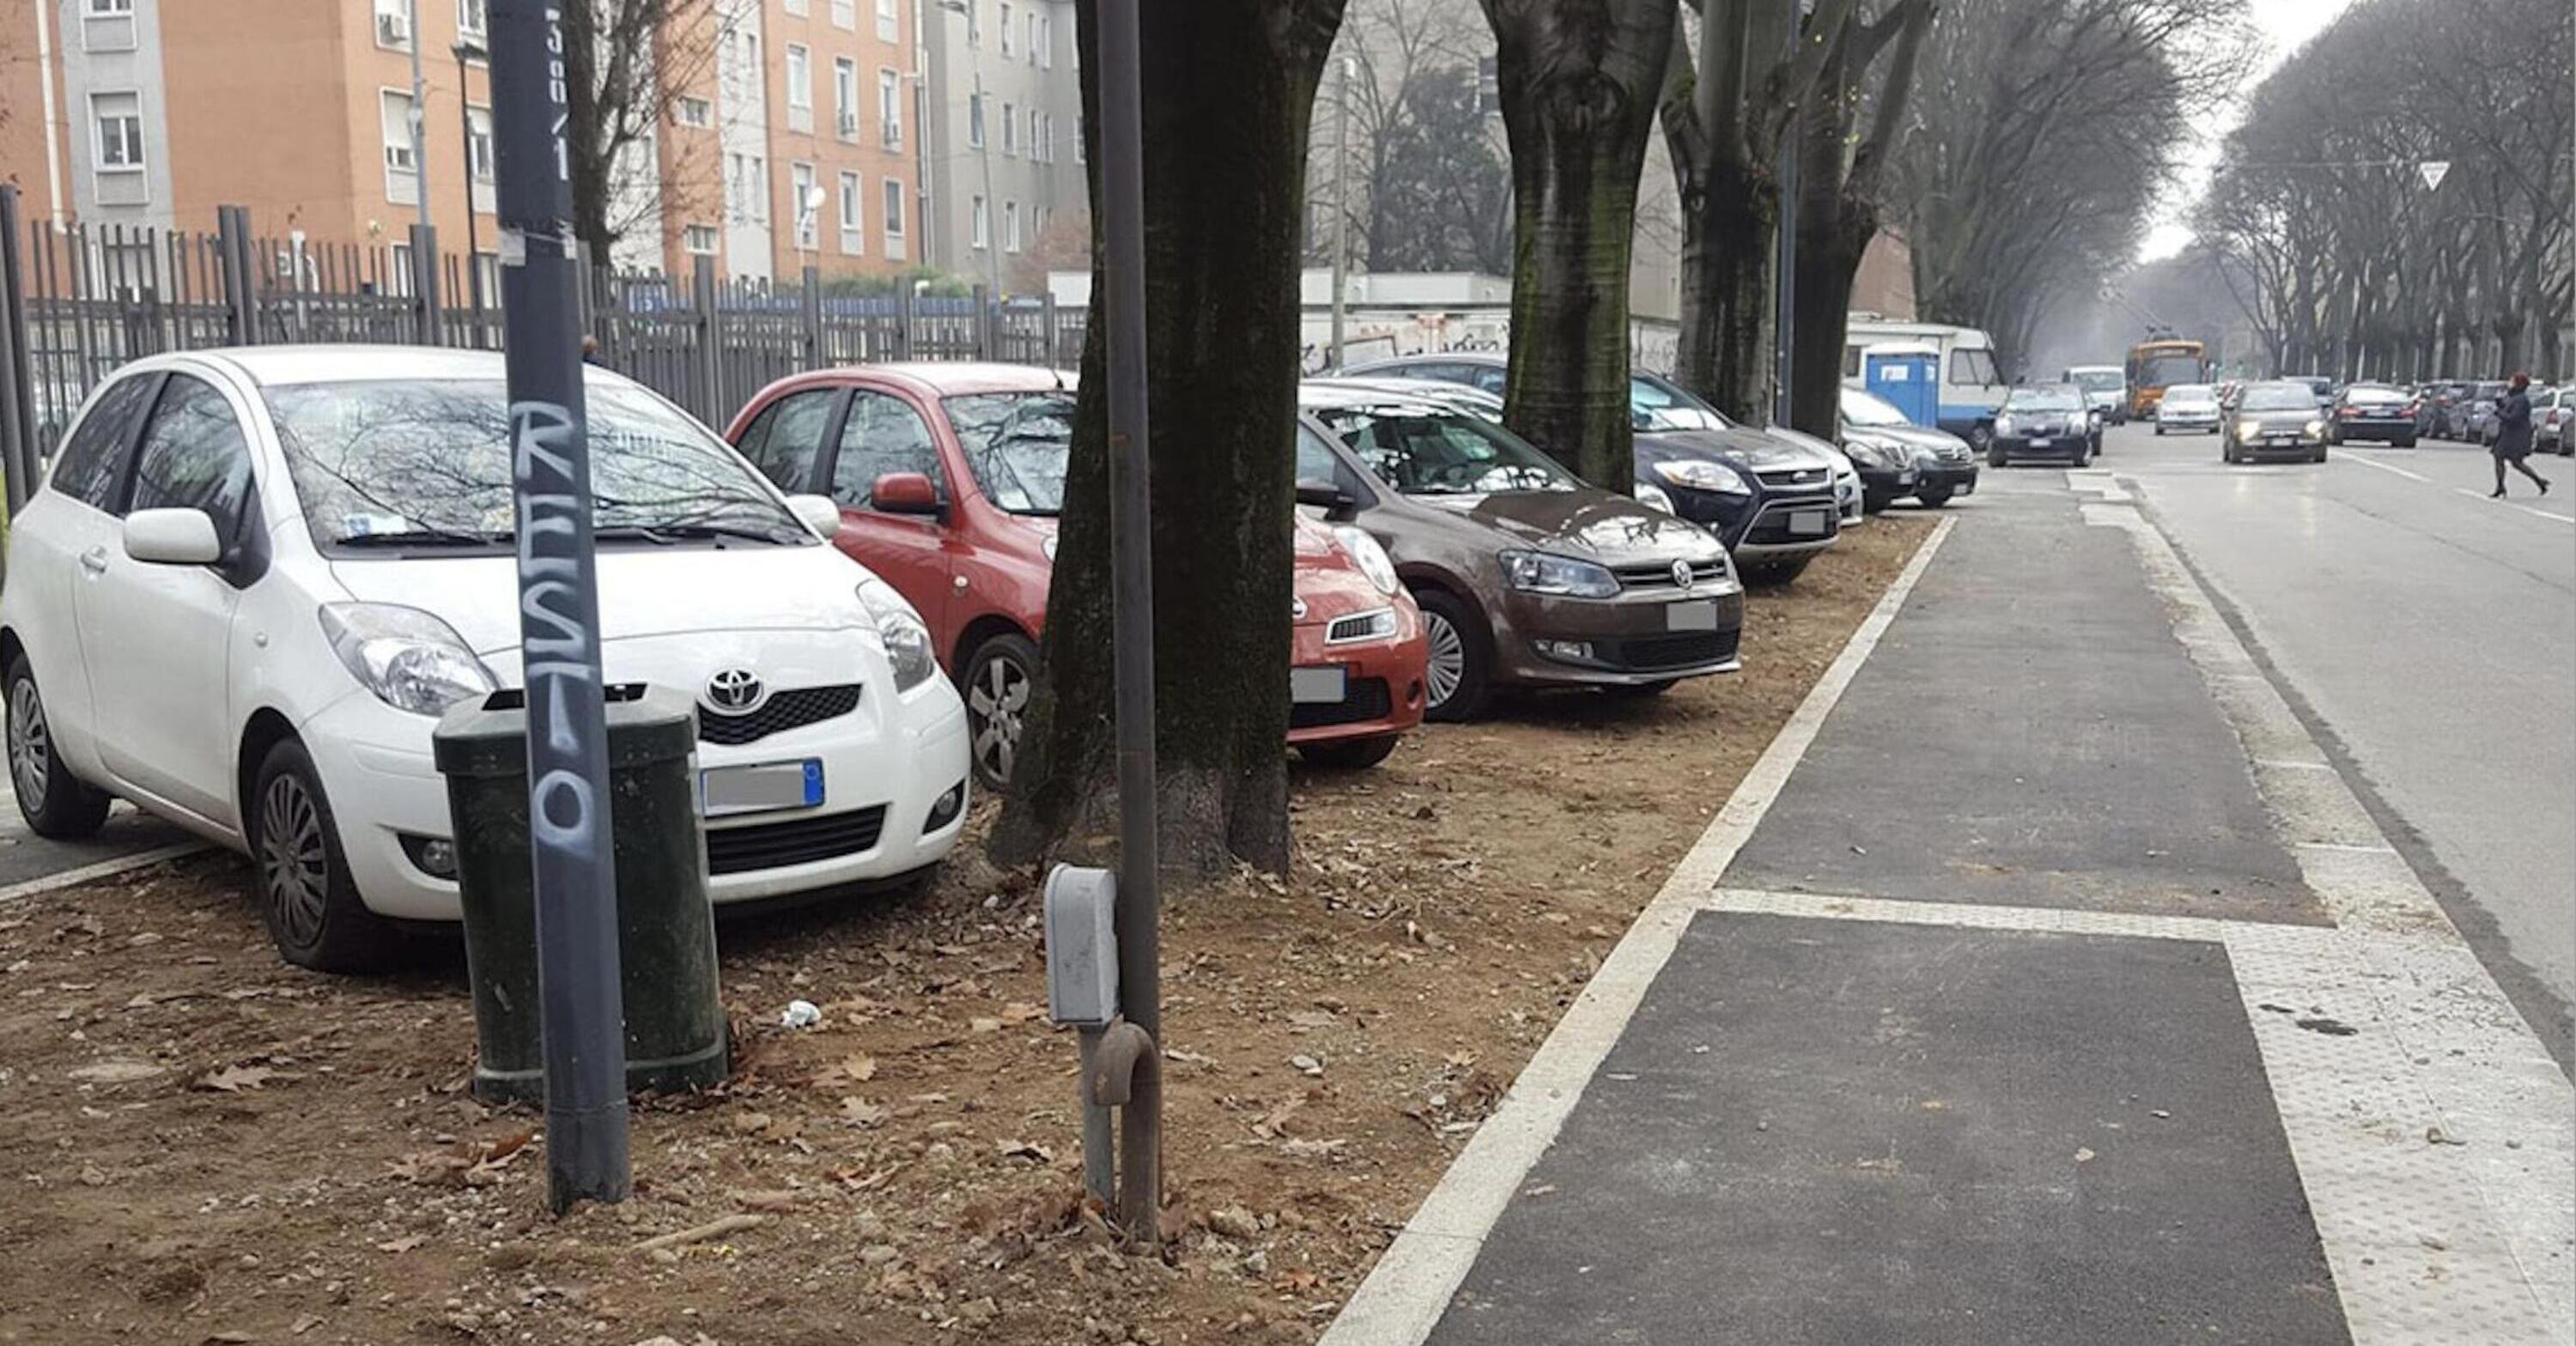 Milano e il problema dei parcheggi: ecco le proposte per migliorare la  situazione - News - Automoto.it